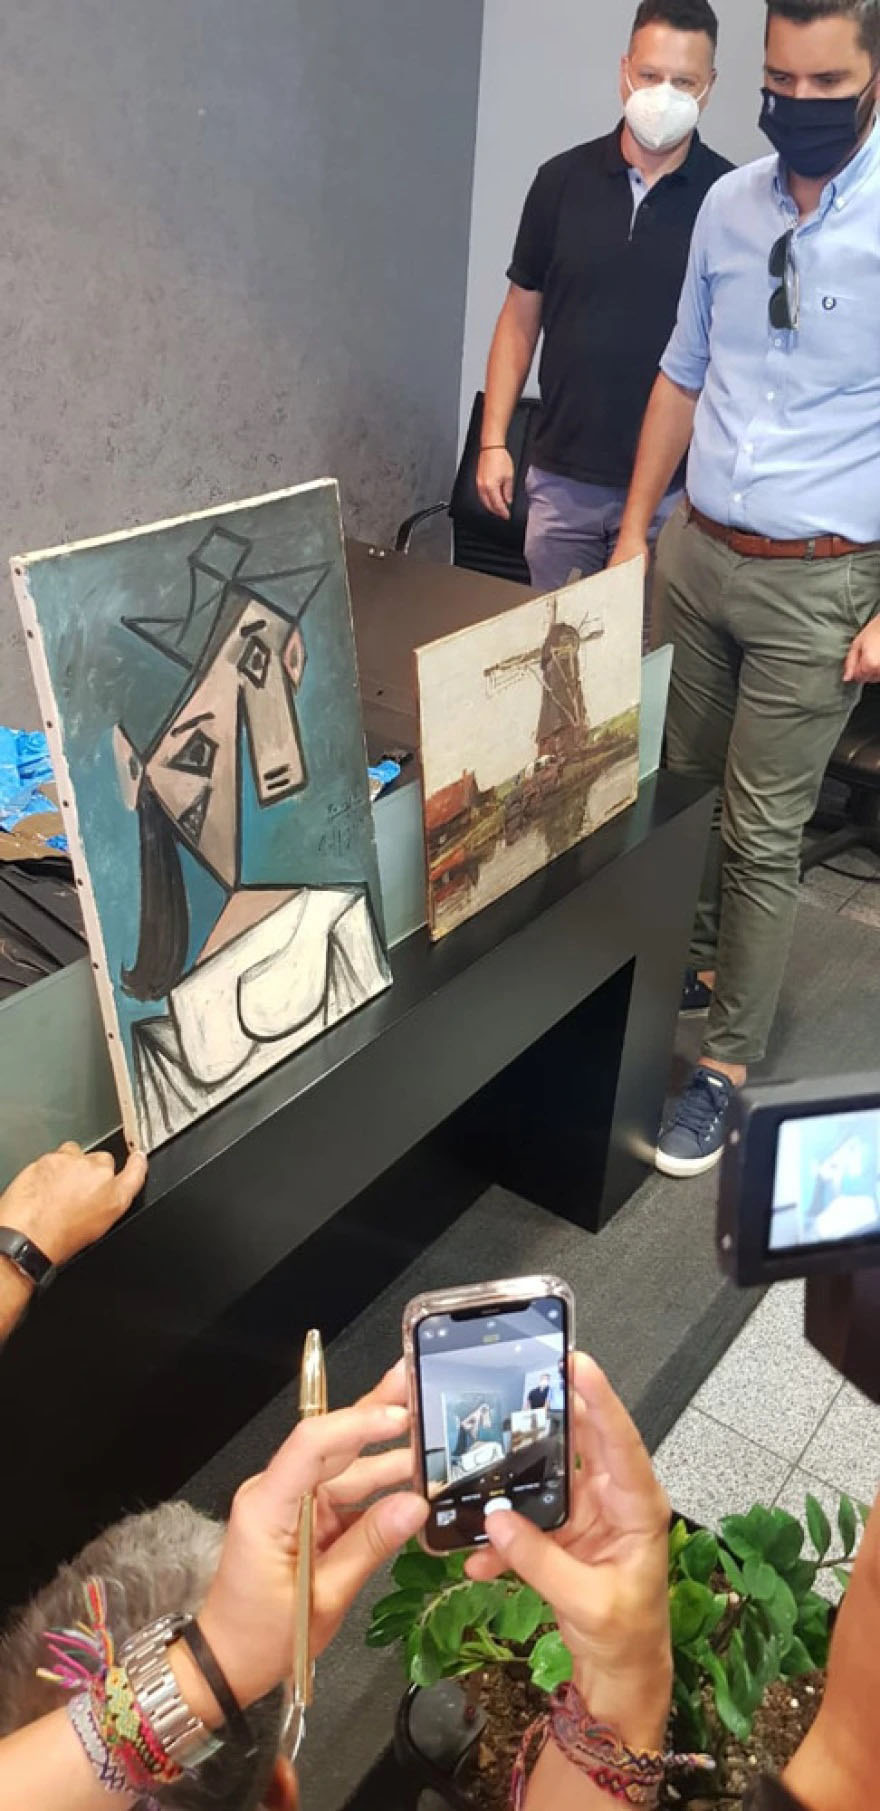 Εθνική Πινακοθήκη: Ο δράστης είχε προσπαθήσει να πουλήσει τον πίνακα του Πικάσο στο εξωτερικό - Υπάρχει και συνεργός